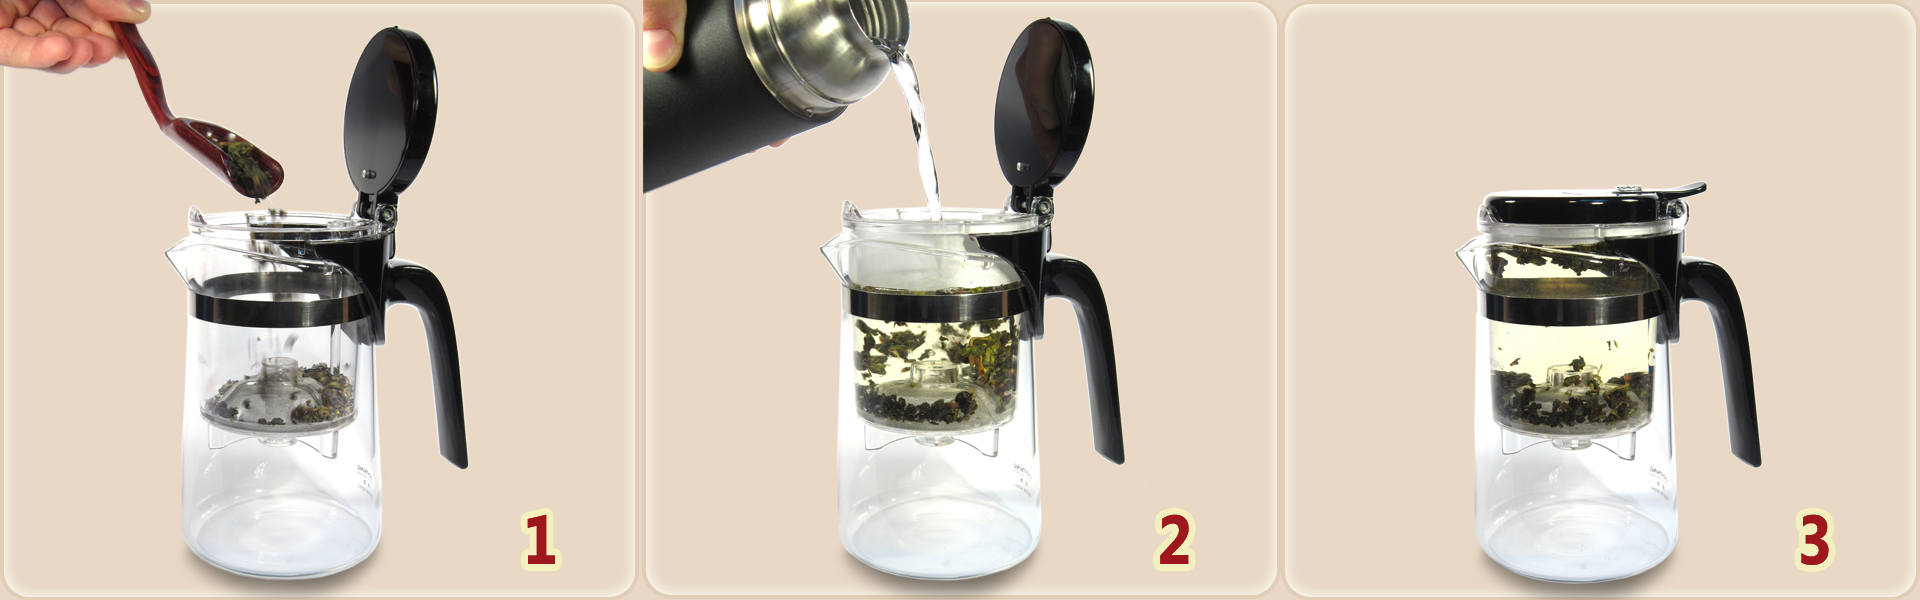 Fonctionnement de la théière avec infuseur : 1. Dosez les feuilles de thé dans l'infuseur. 2. Versez l'eau chaude dans l'infuseur. 3. Patientez...